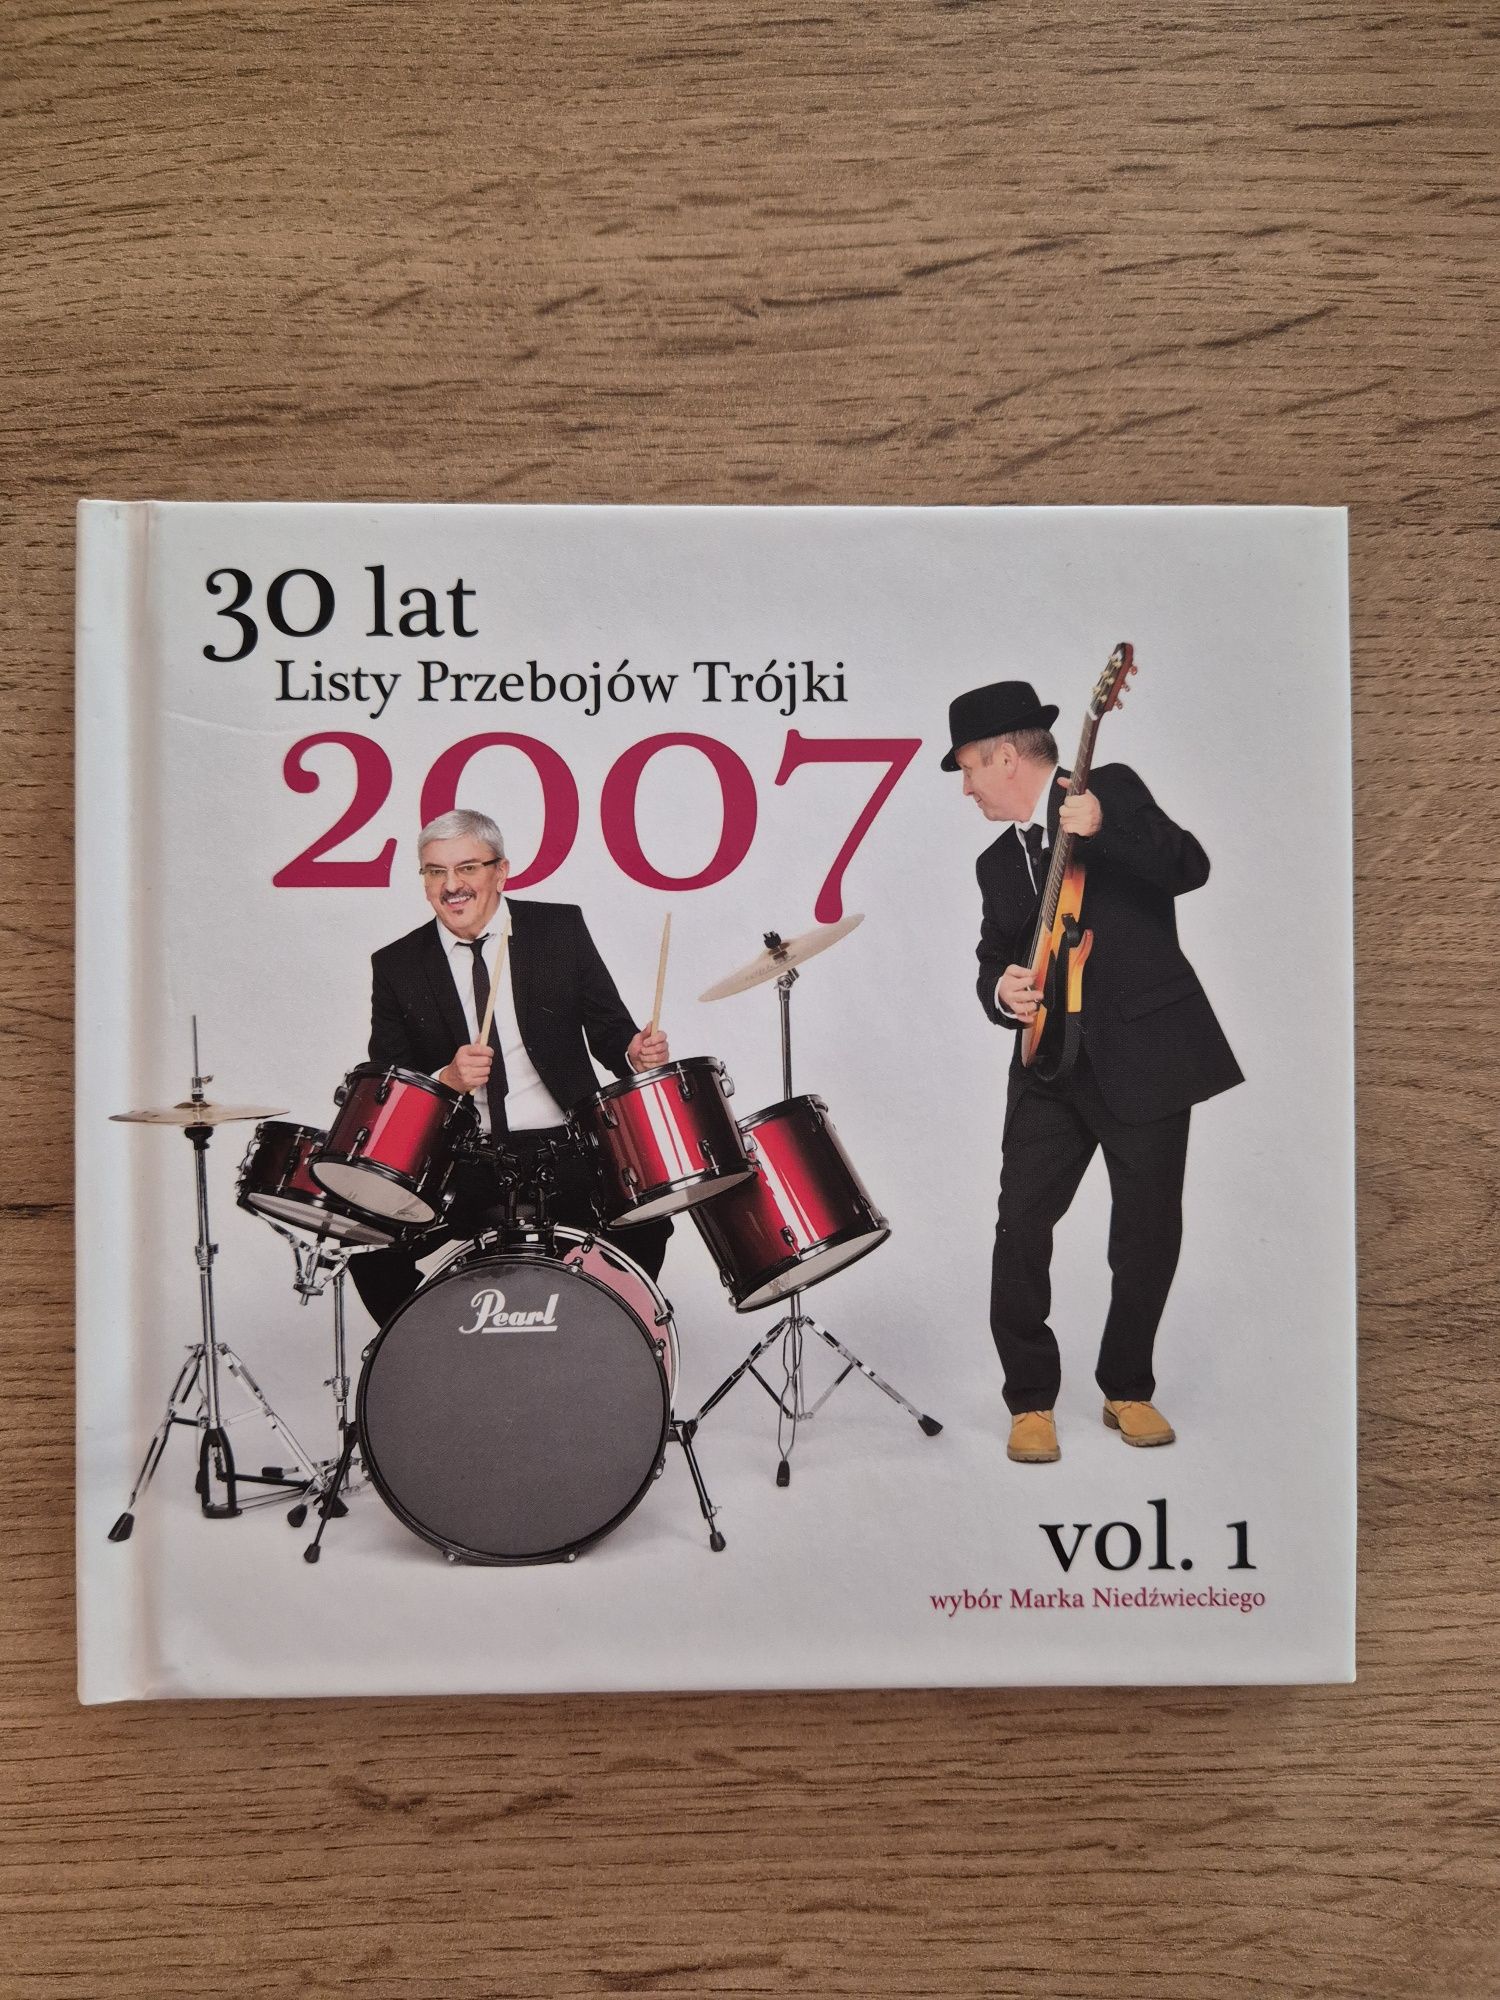 30 lat Listy Przebojów Trójki 2007 vol. 1